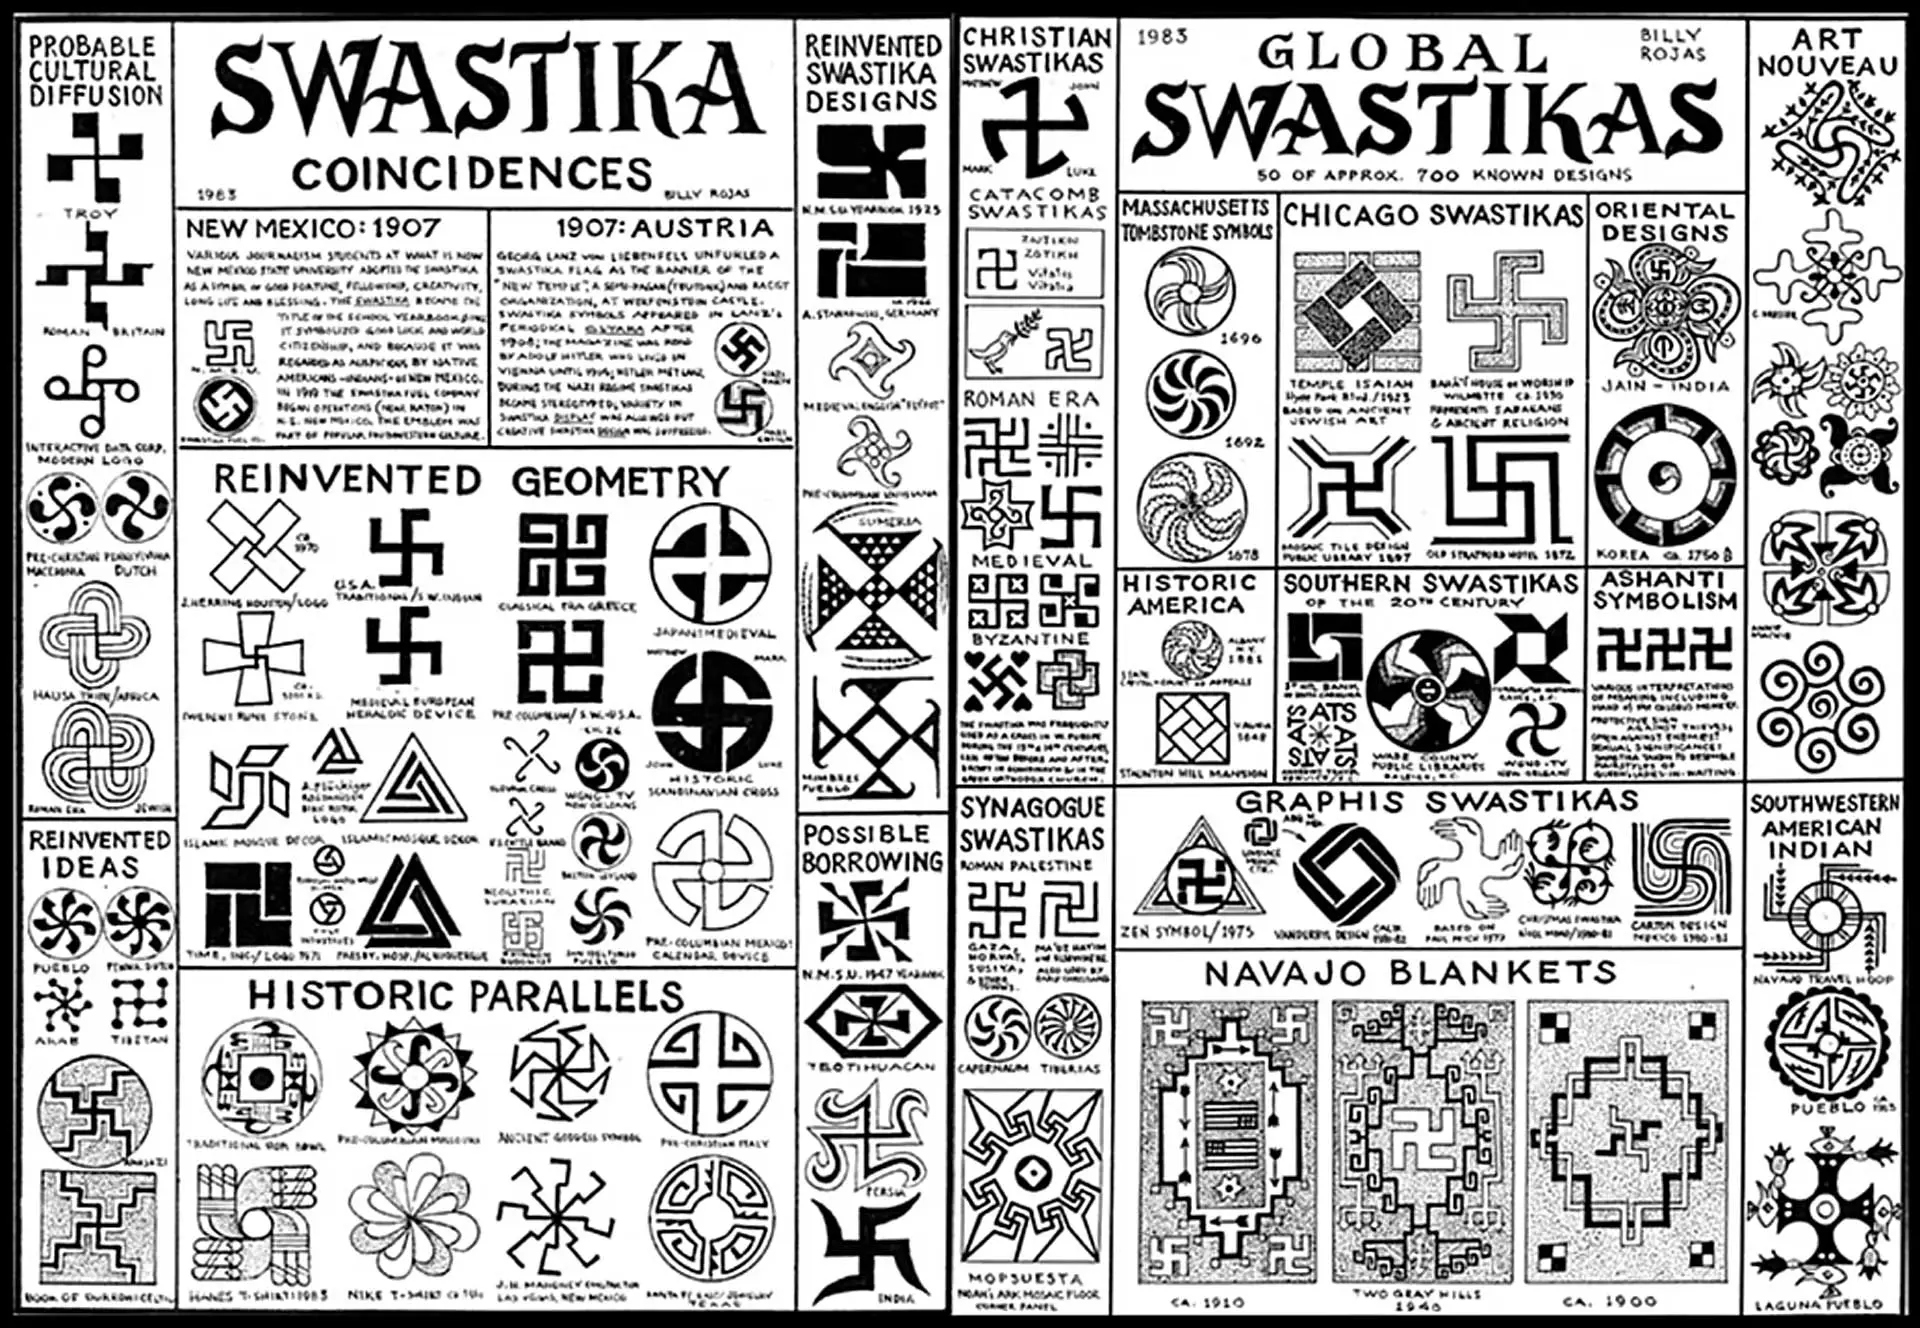 Co oznacza hitlerowska swastyka?